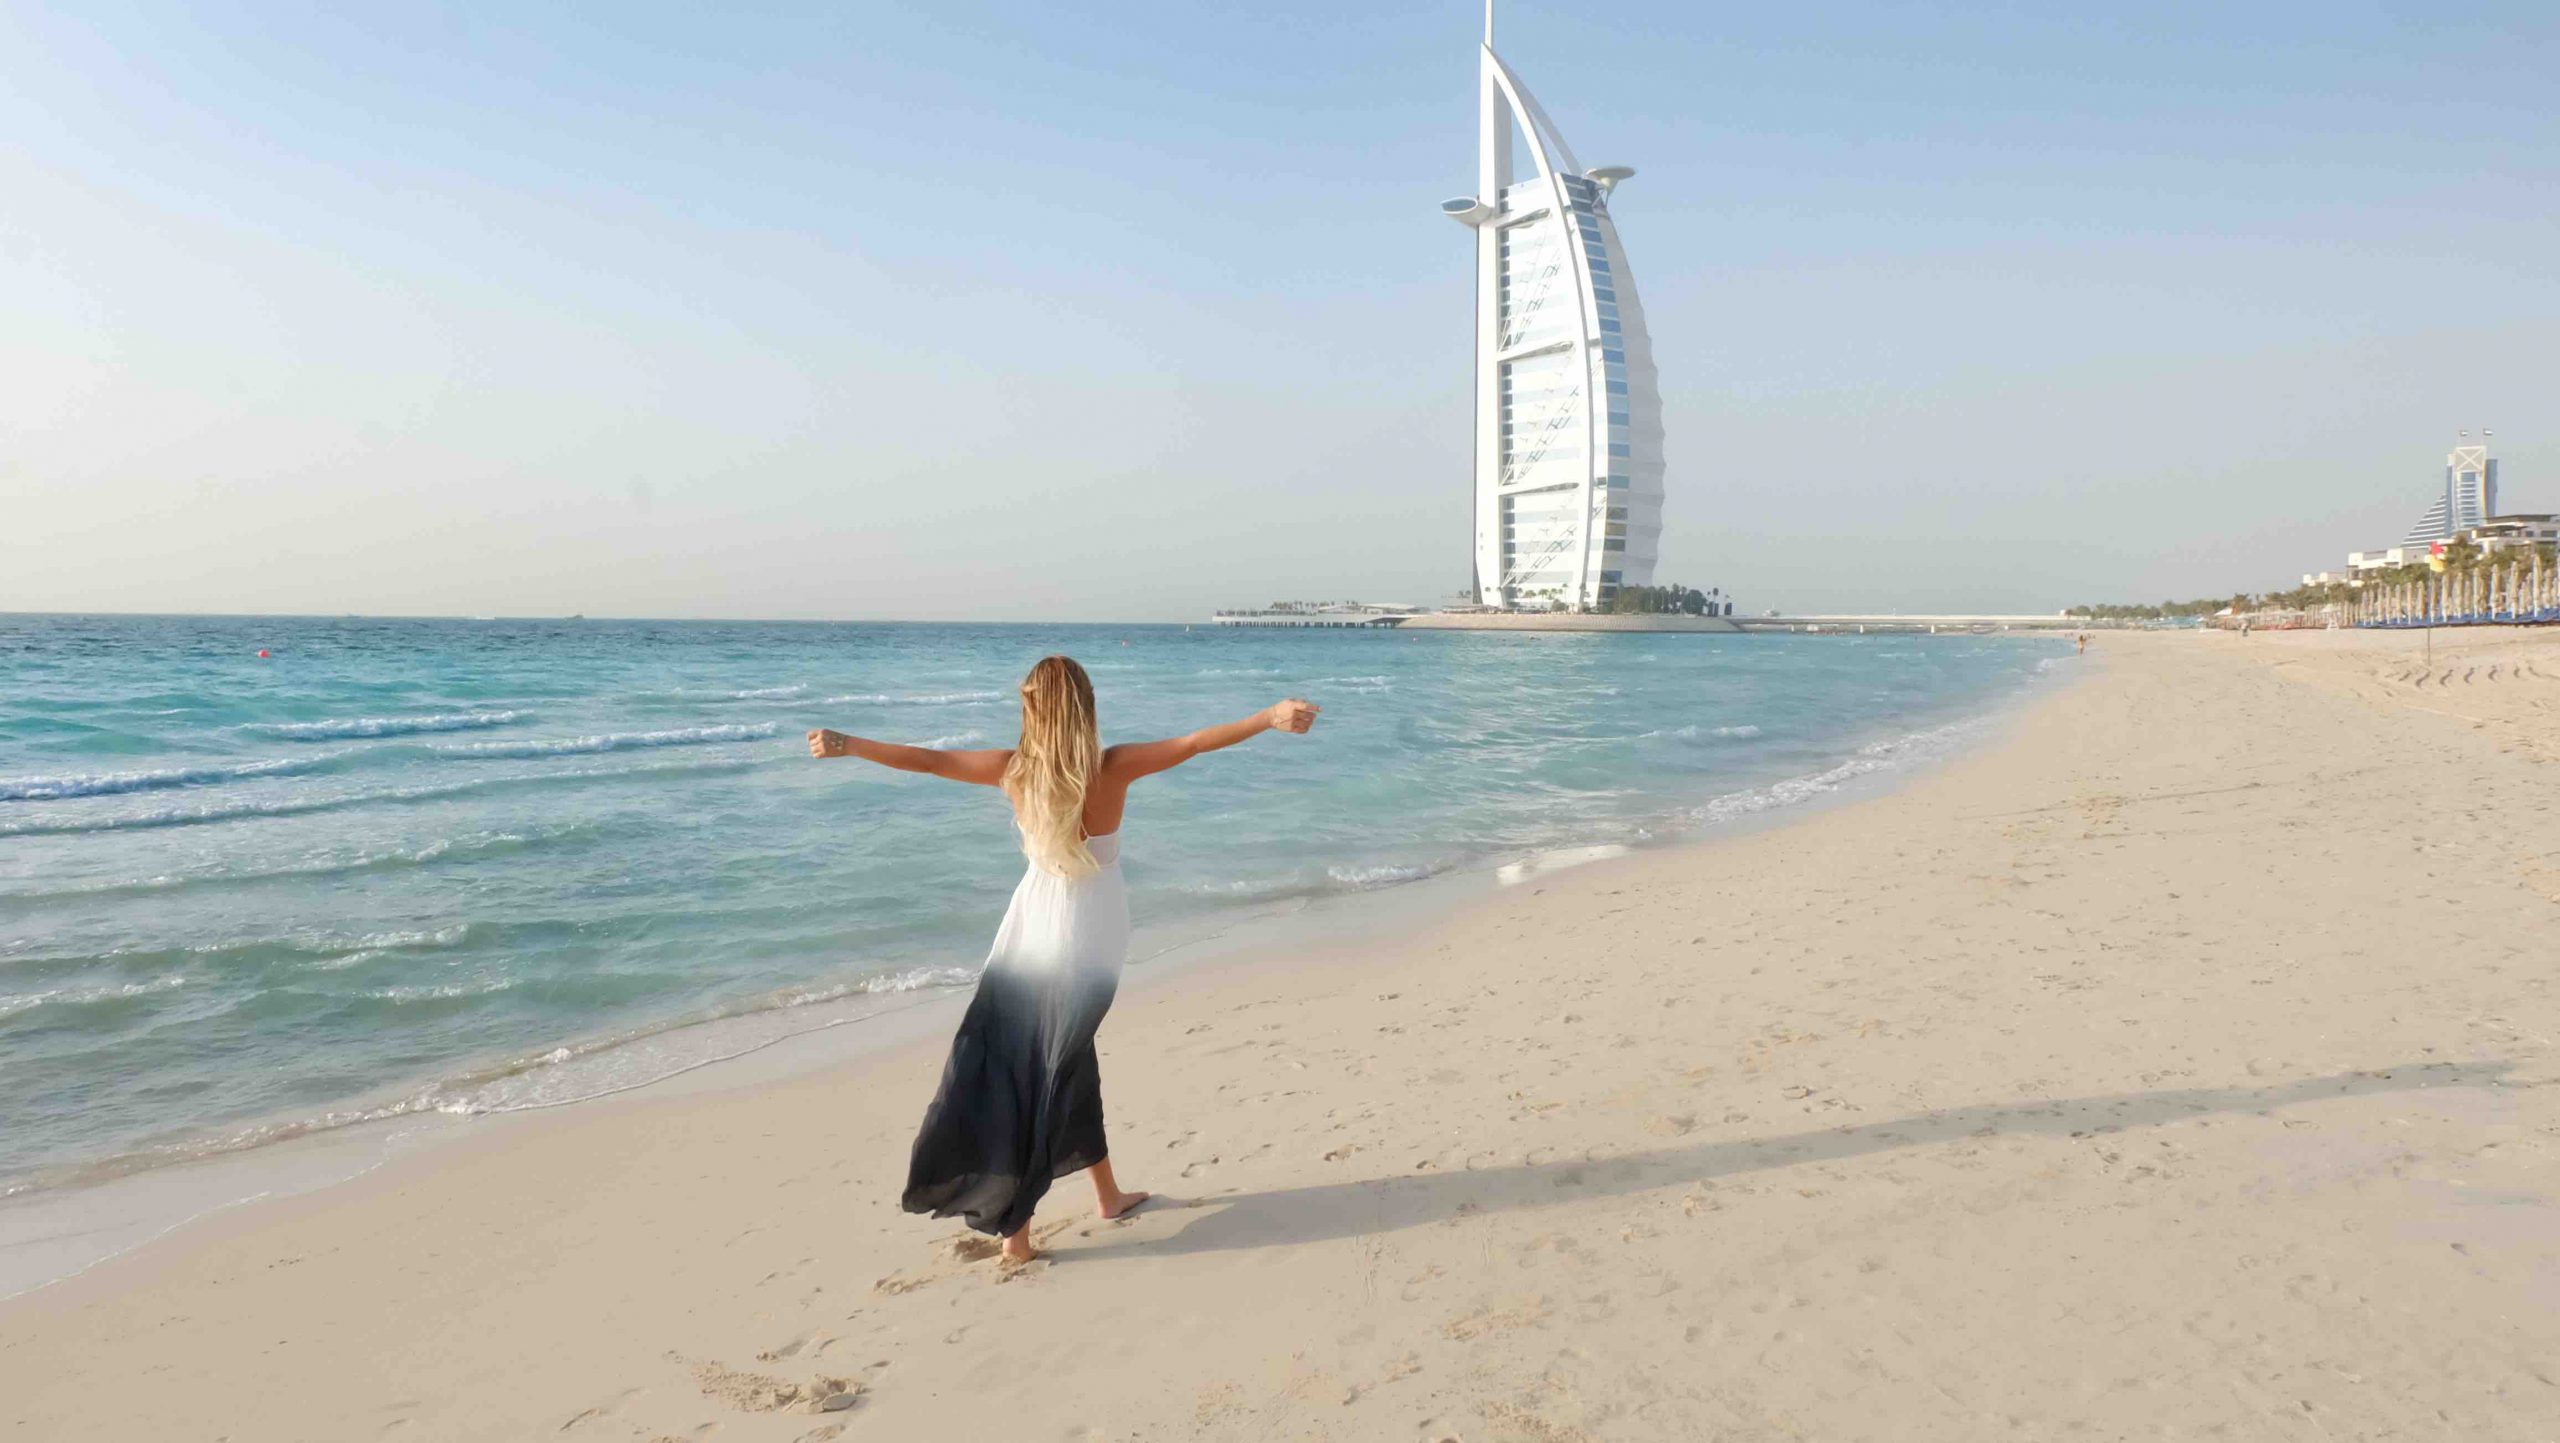 Stardust vola a Dubai. La media agency punta all’estero e guarda al lusso